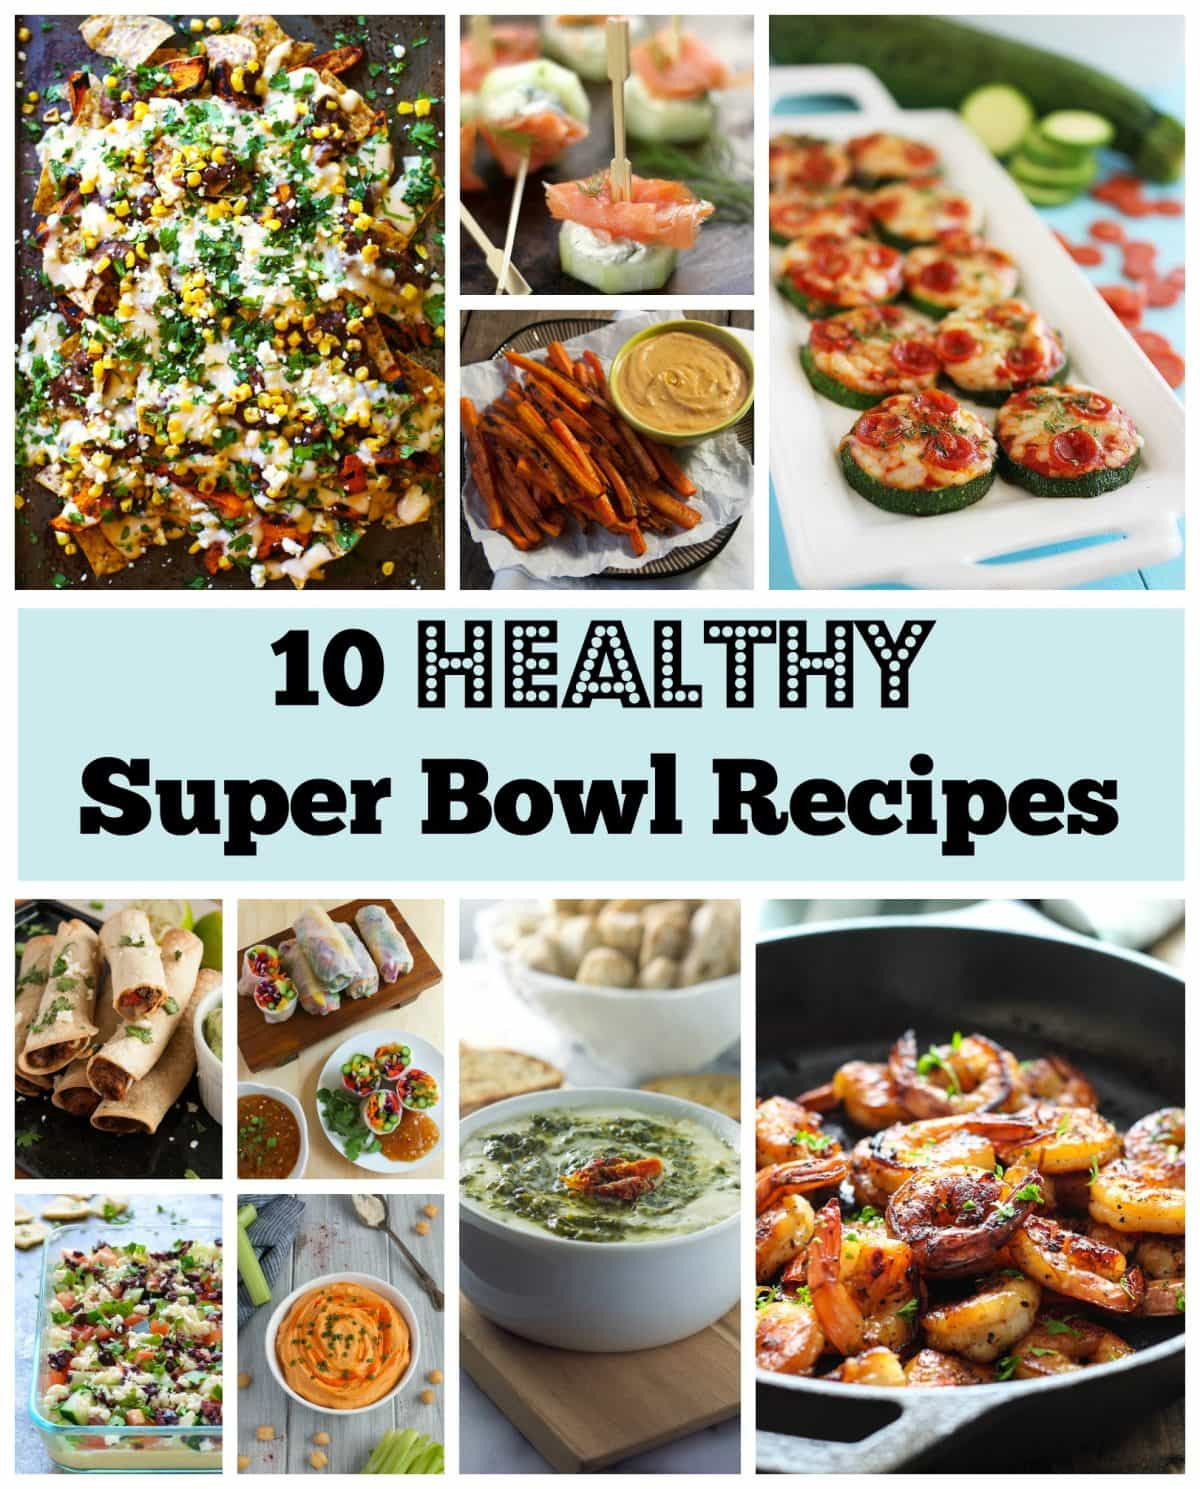 Super Bowl Recipes Healthy
 Healthy Super Bowl Recipes Feasting not Fasting